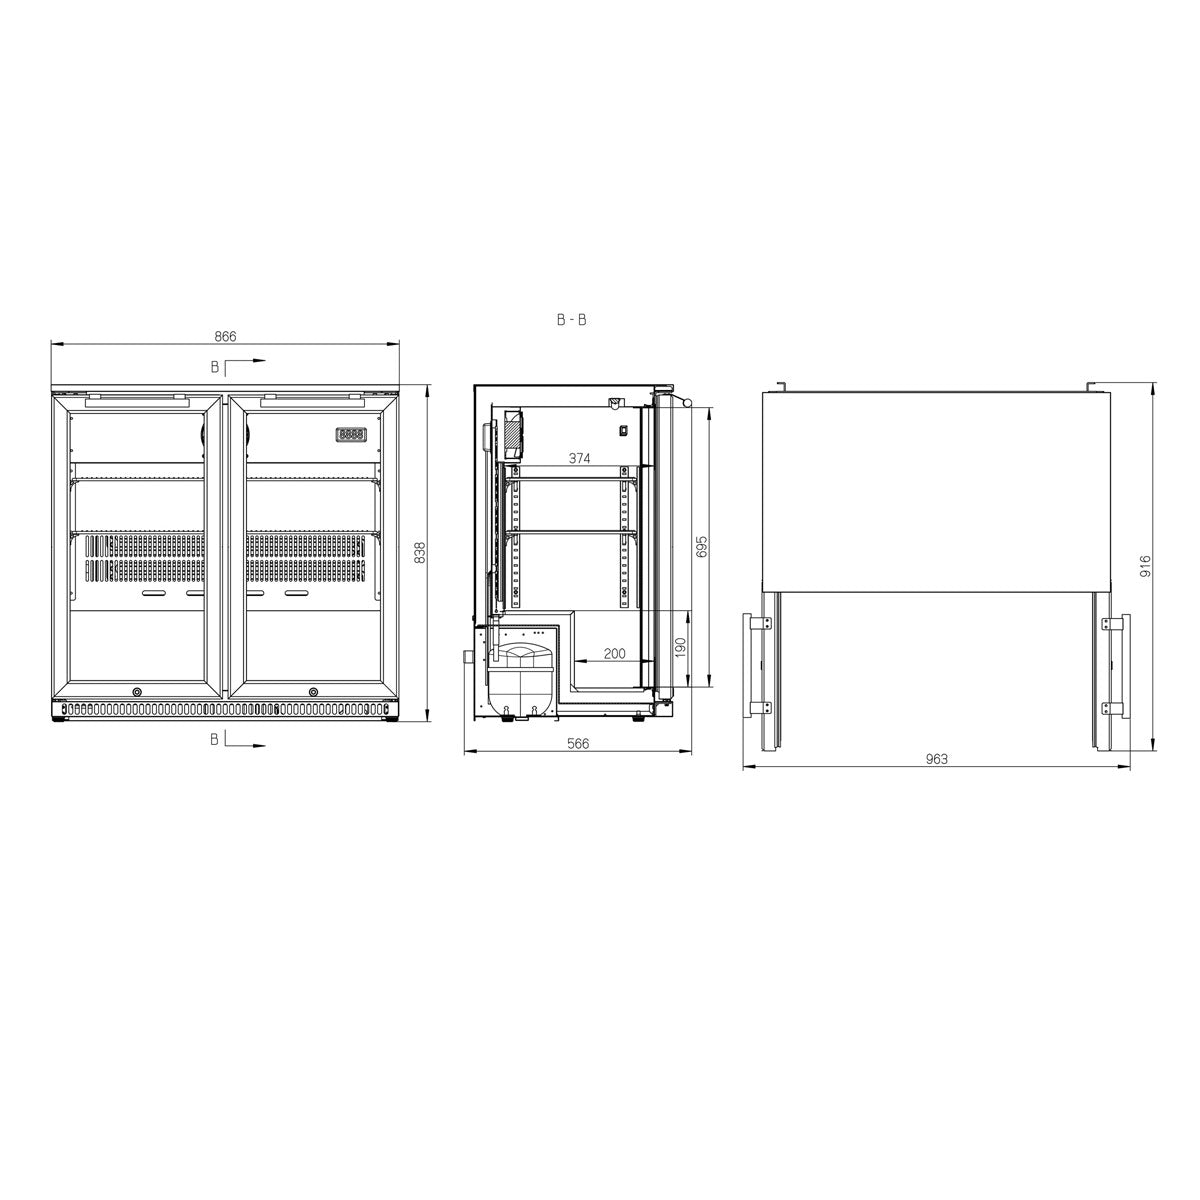 Husky 190L Double Door Alfresco Drinks Chiller With Anti-Condensation Doors In S/Steel (ALF-C2-840) - Factory Seconds